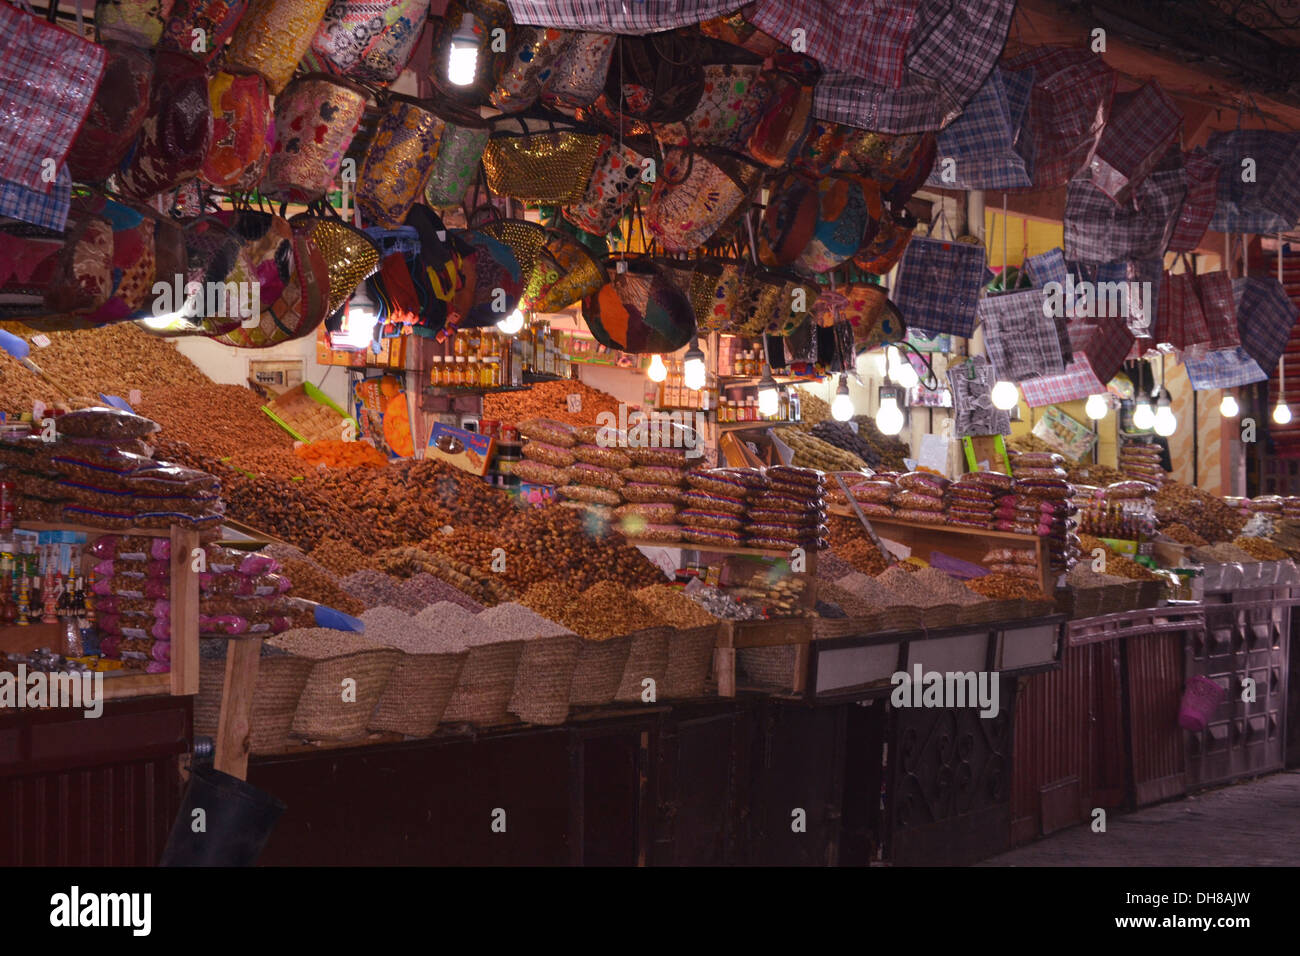 Incredibile stallo del mercato nei souks, Marrakech, Marocco. Foto Stock